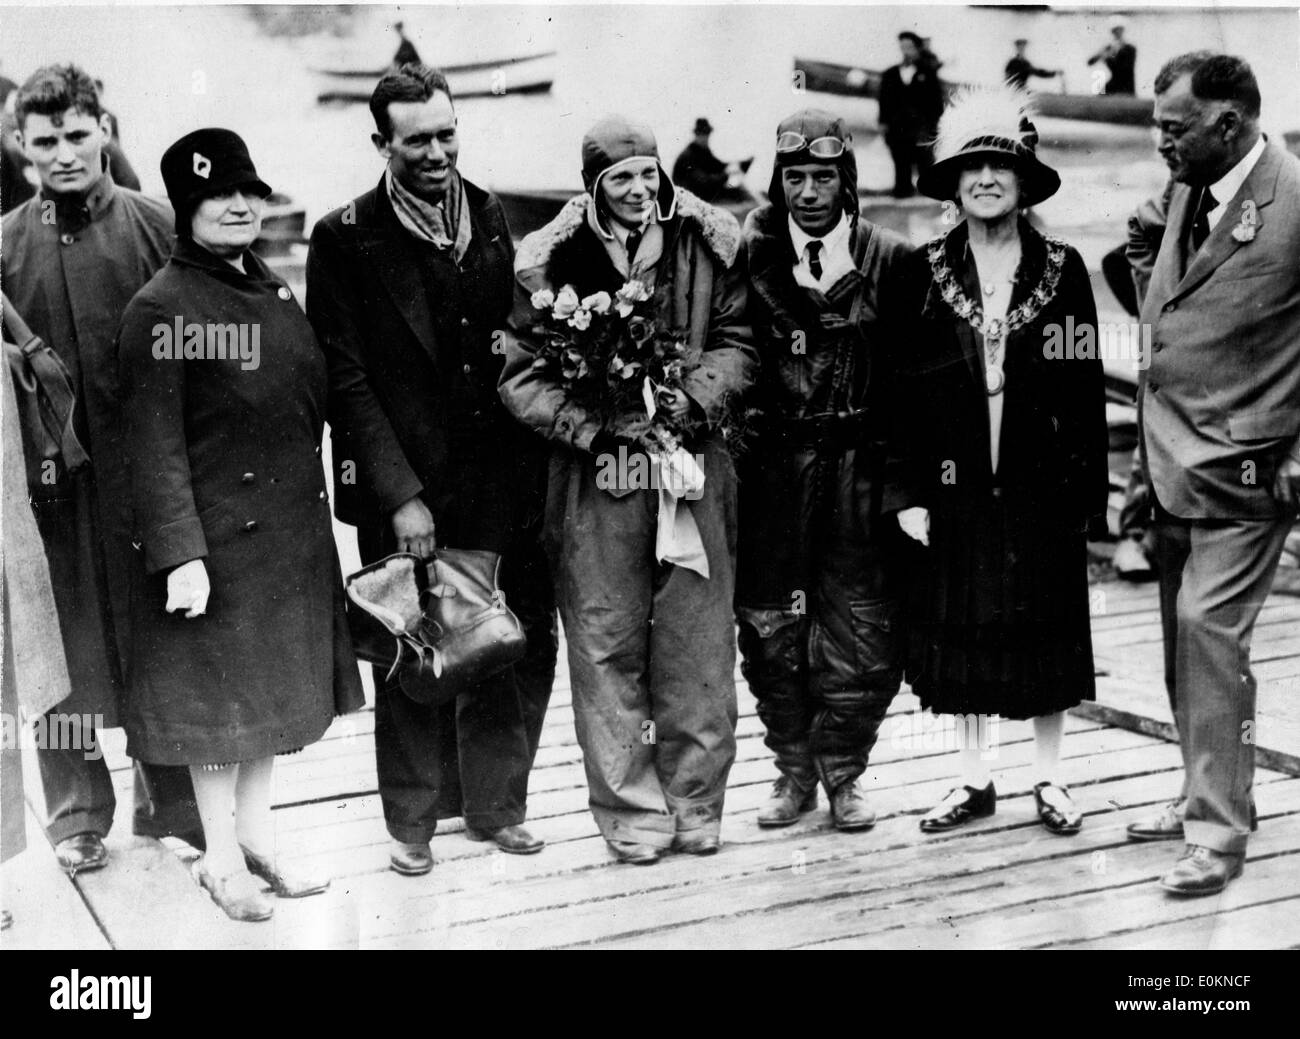 Louis 'slim' Gordon, Amelia Earhart e Wilmer Stultz dopo aver attraversato oltre oceano Atlantico Foto Stock